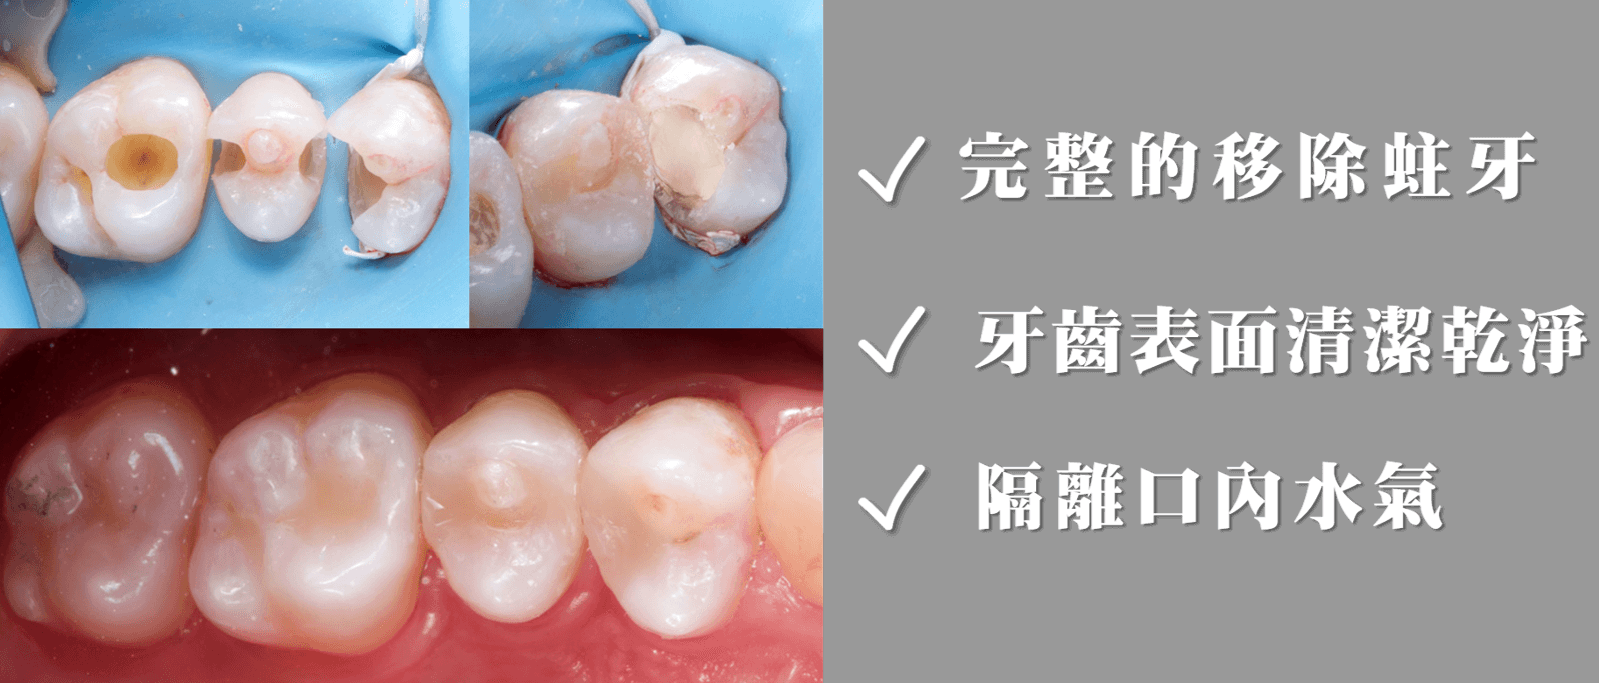 完整的移除蛀牙、牙齒表面清潔乾淨、隔離口內水氣